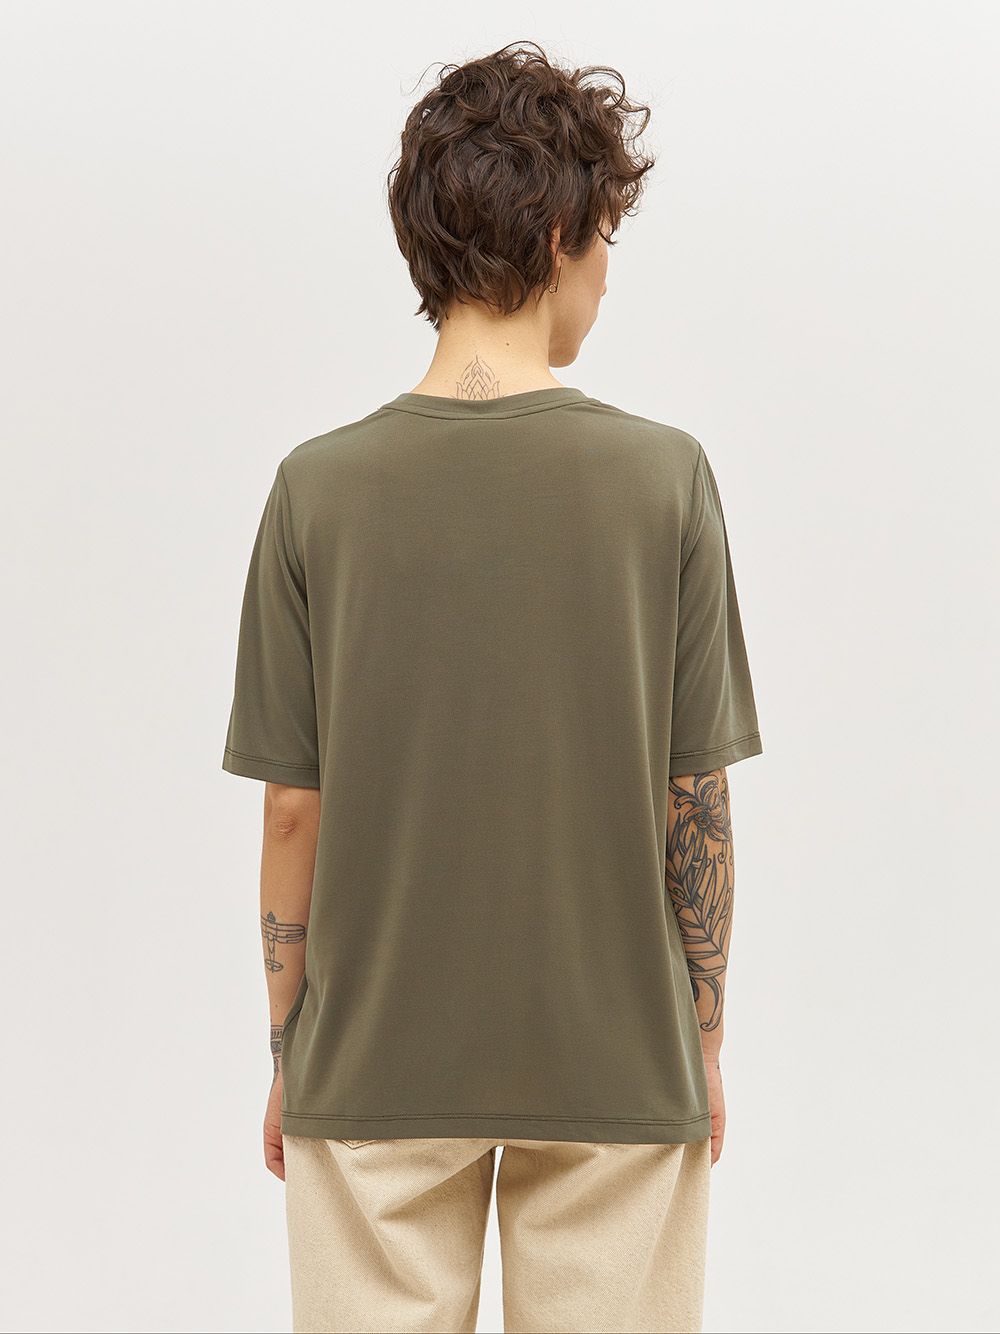 Базовая футболка CINIS из эко-ткани «модал» цвета хаки. Изображение 4